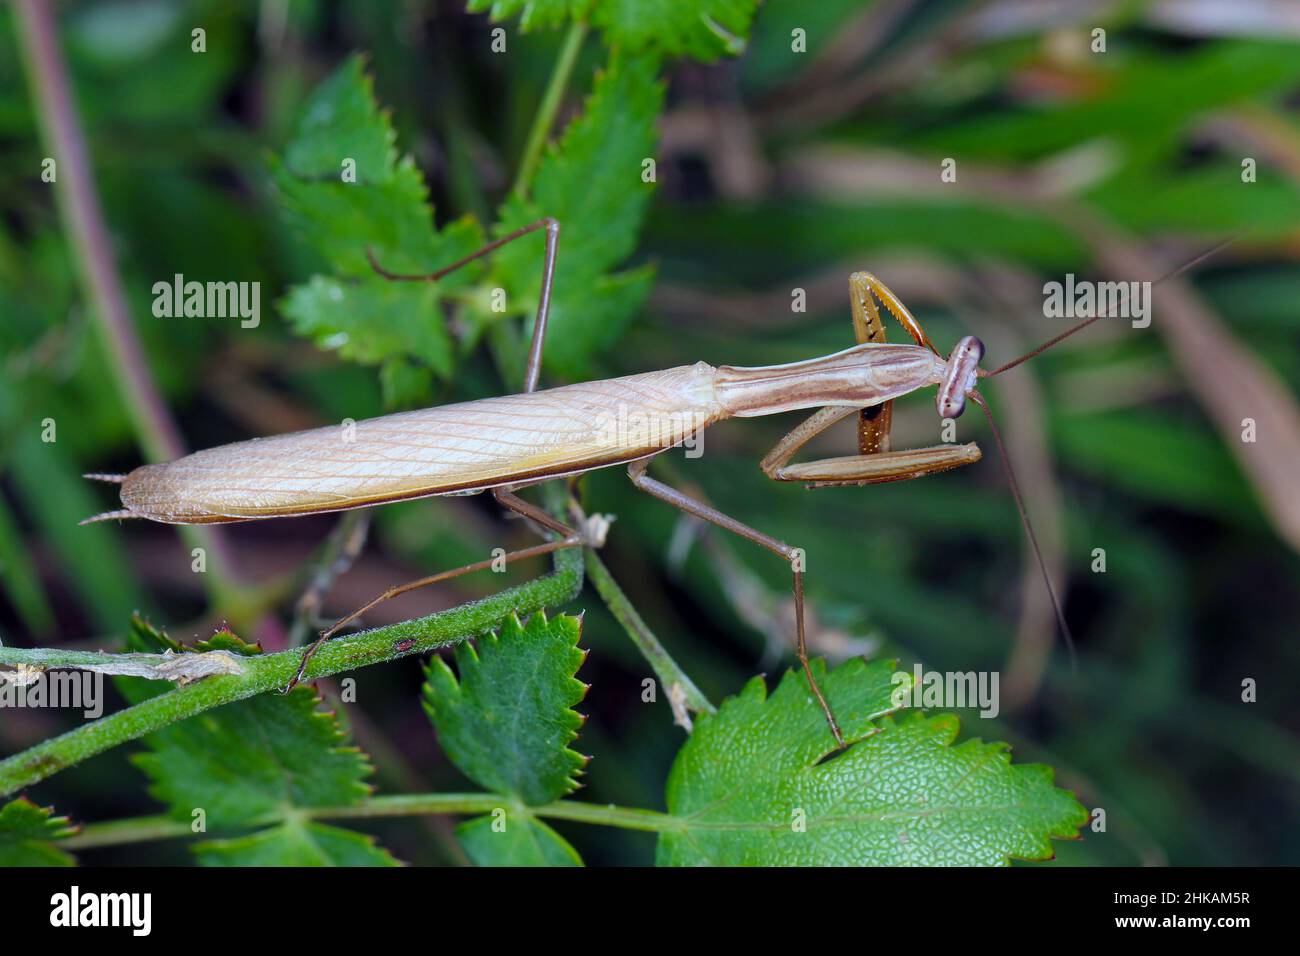 European mantis, Mantis religiosa, praying mantis. Male. Stock Photo